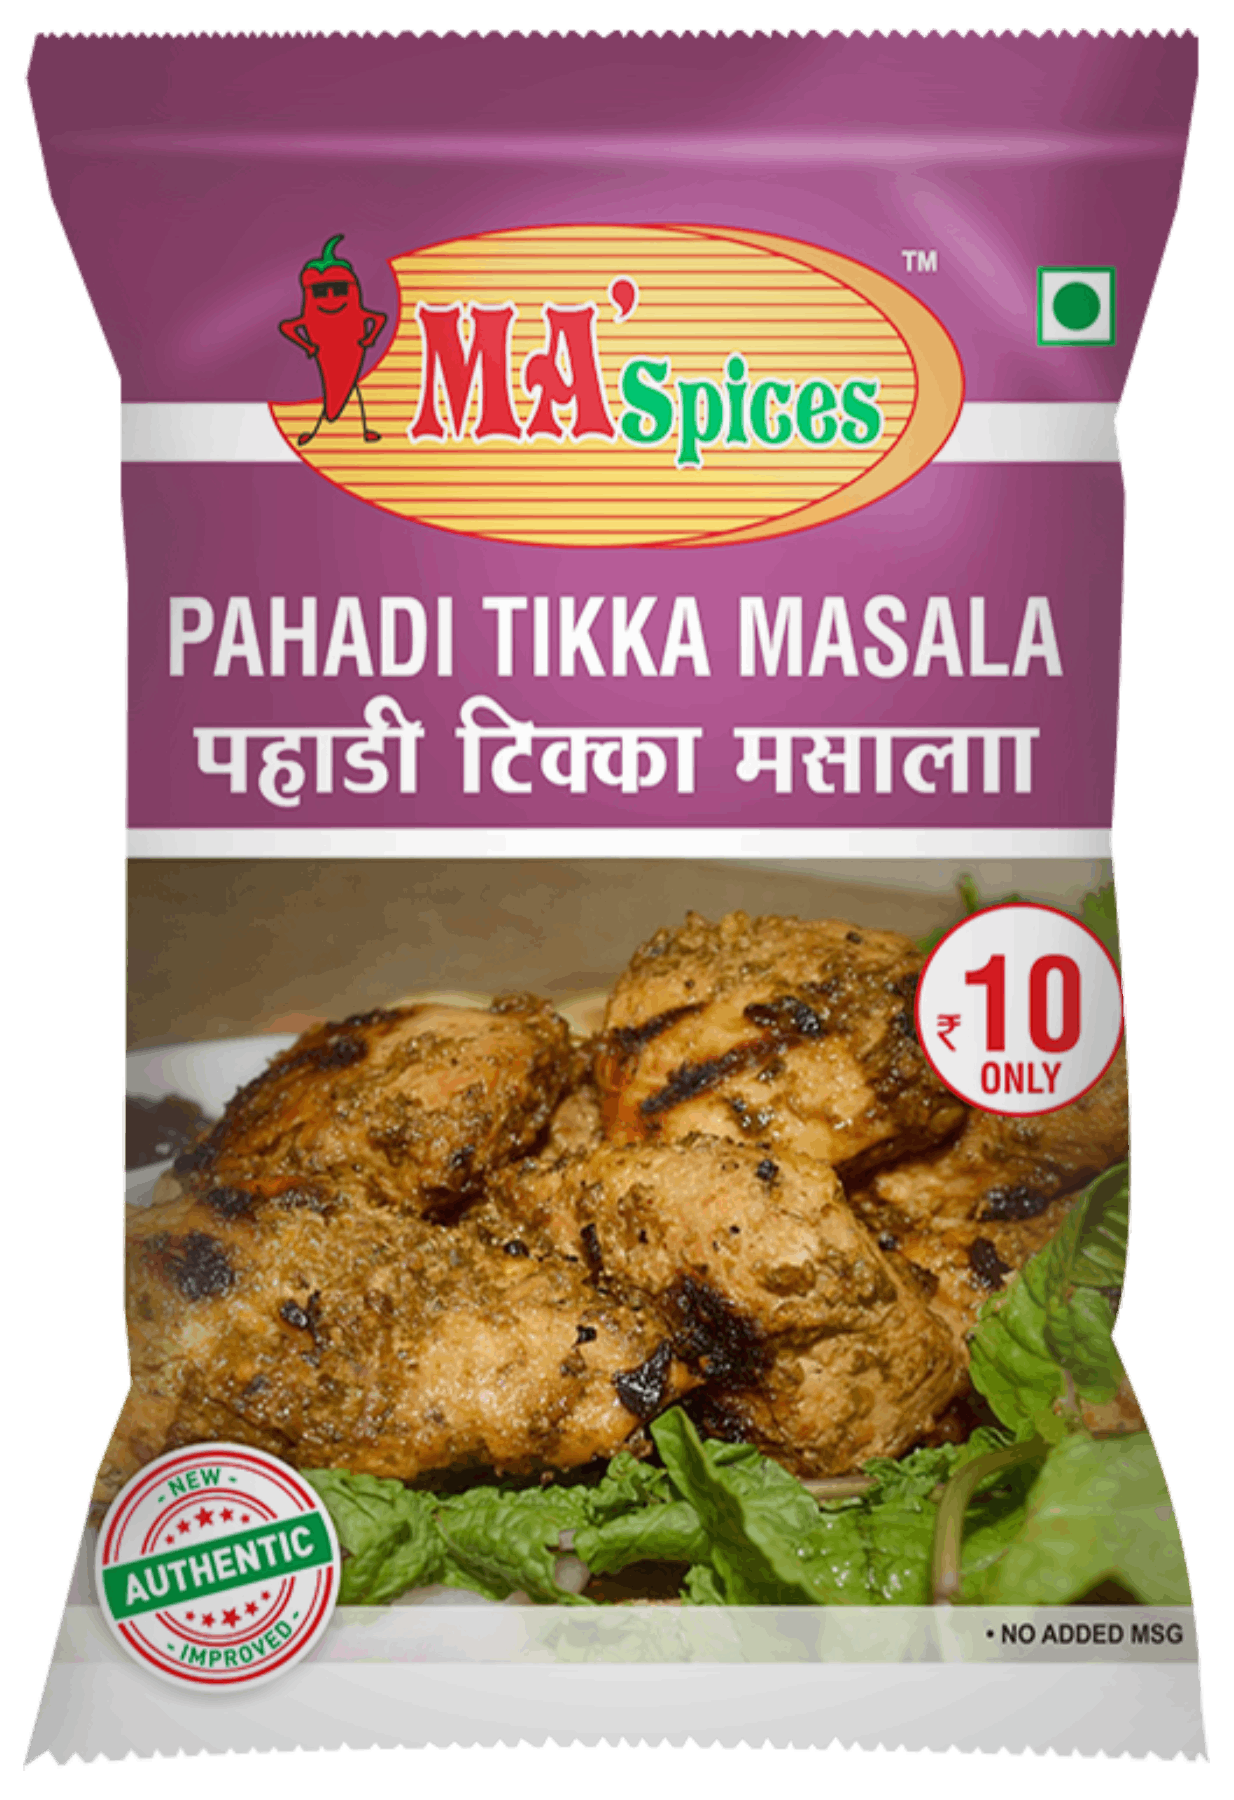 pahadi-tikka-masala-ma-spices